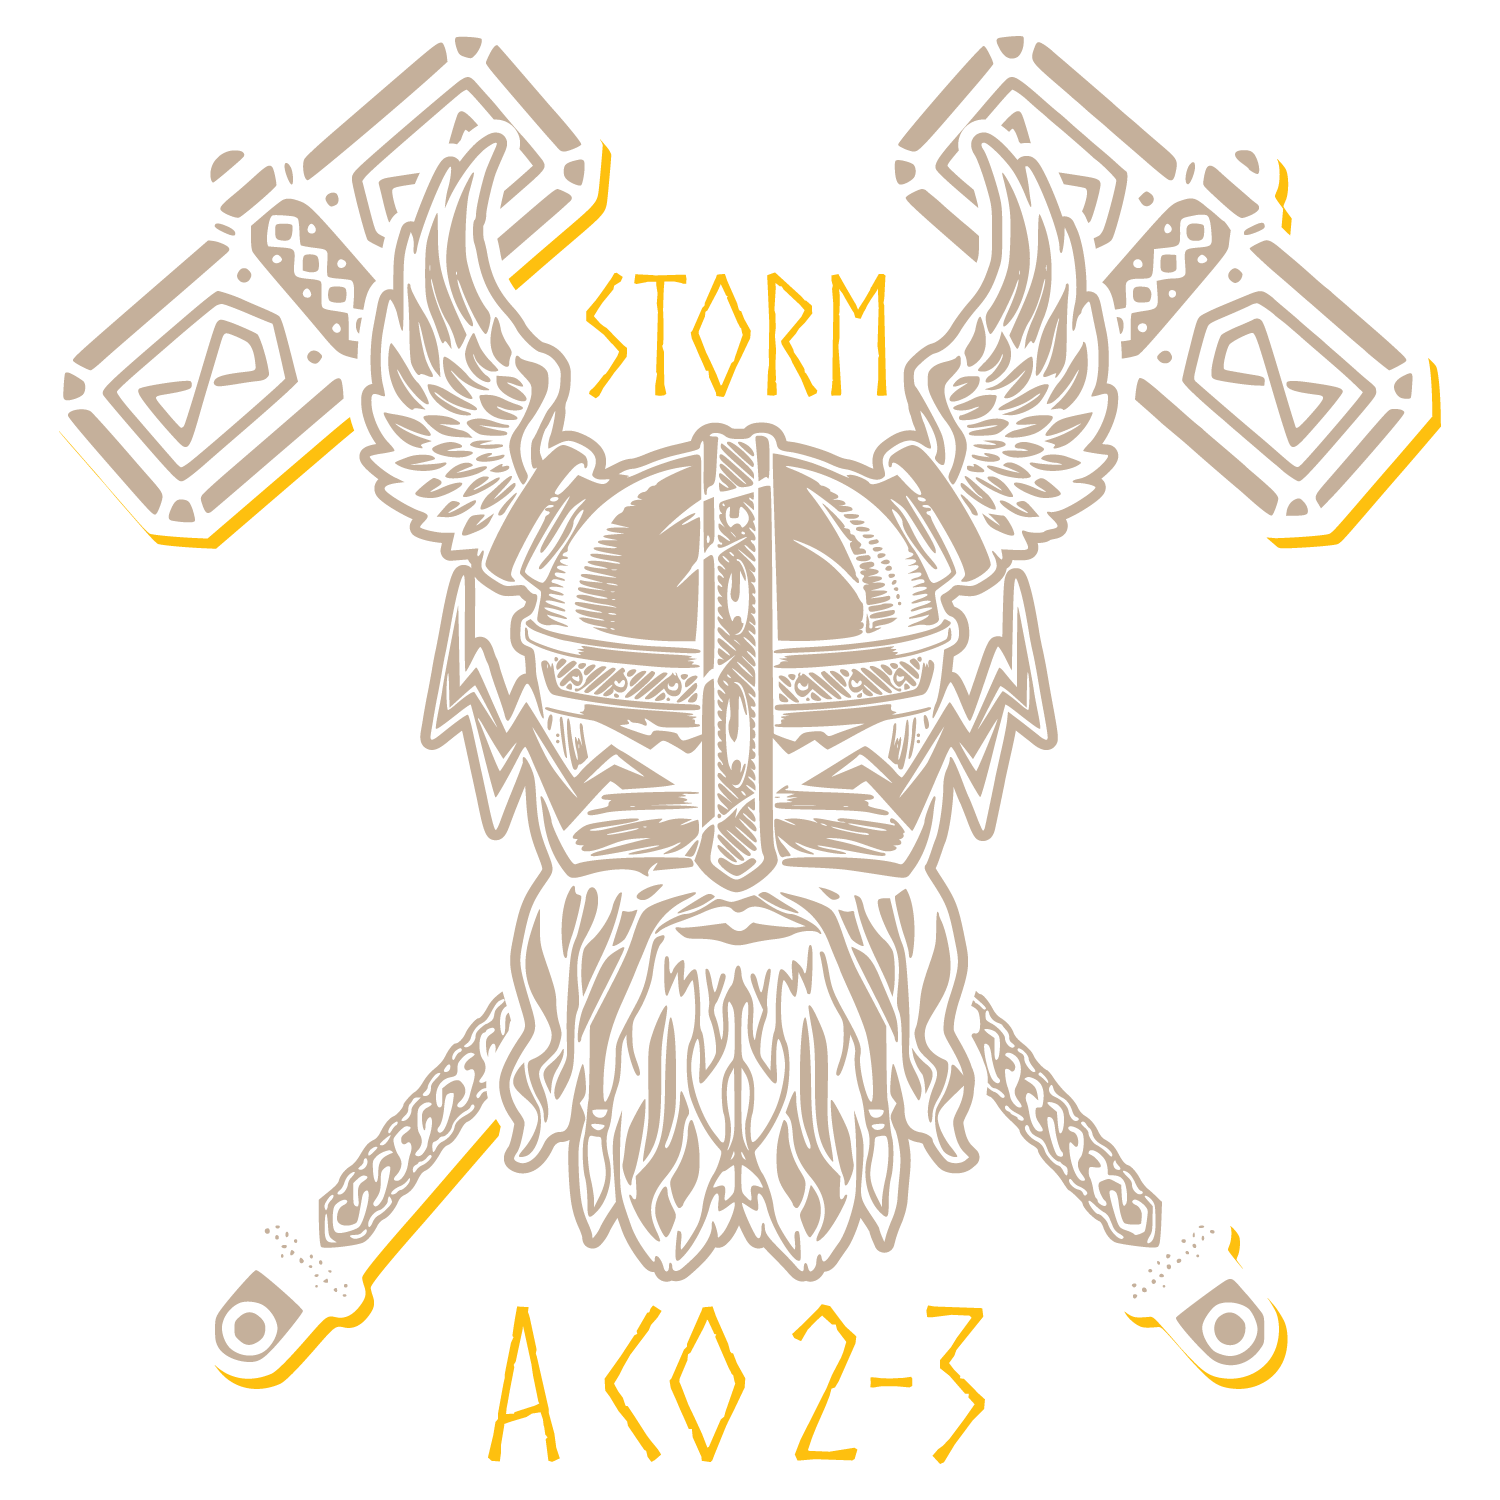 A Co, 2-3 GSAB "Storm"